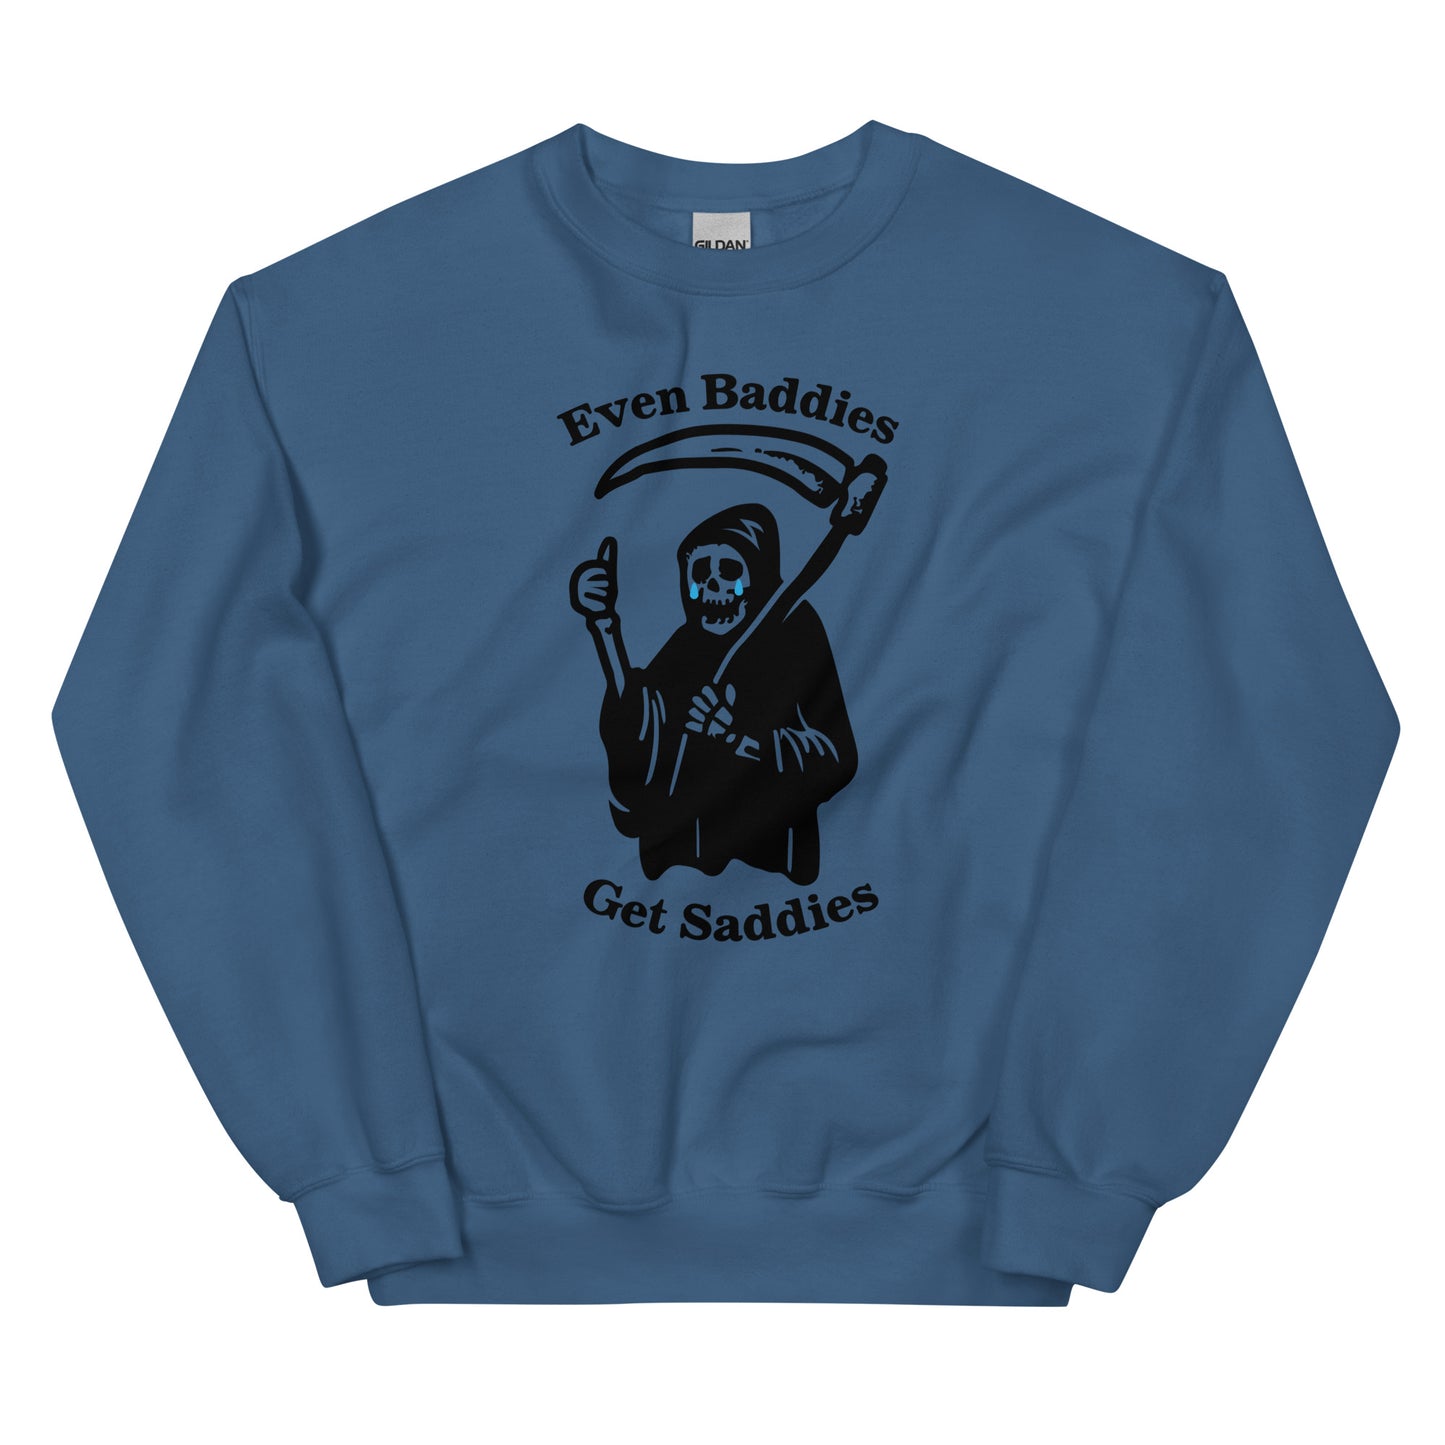 Even Baddies Get Saddies Unisex Sweatshirt